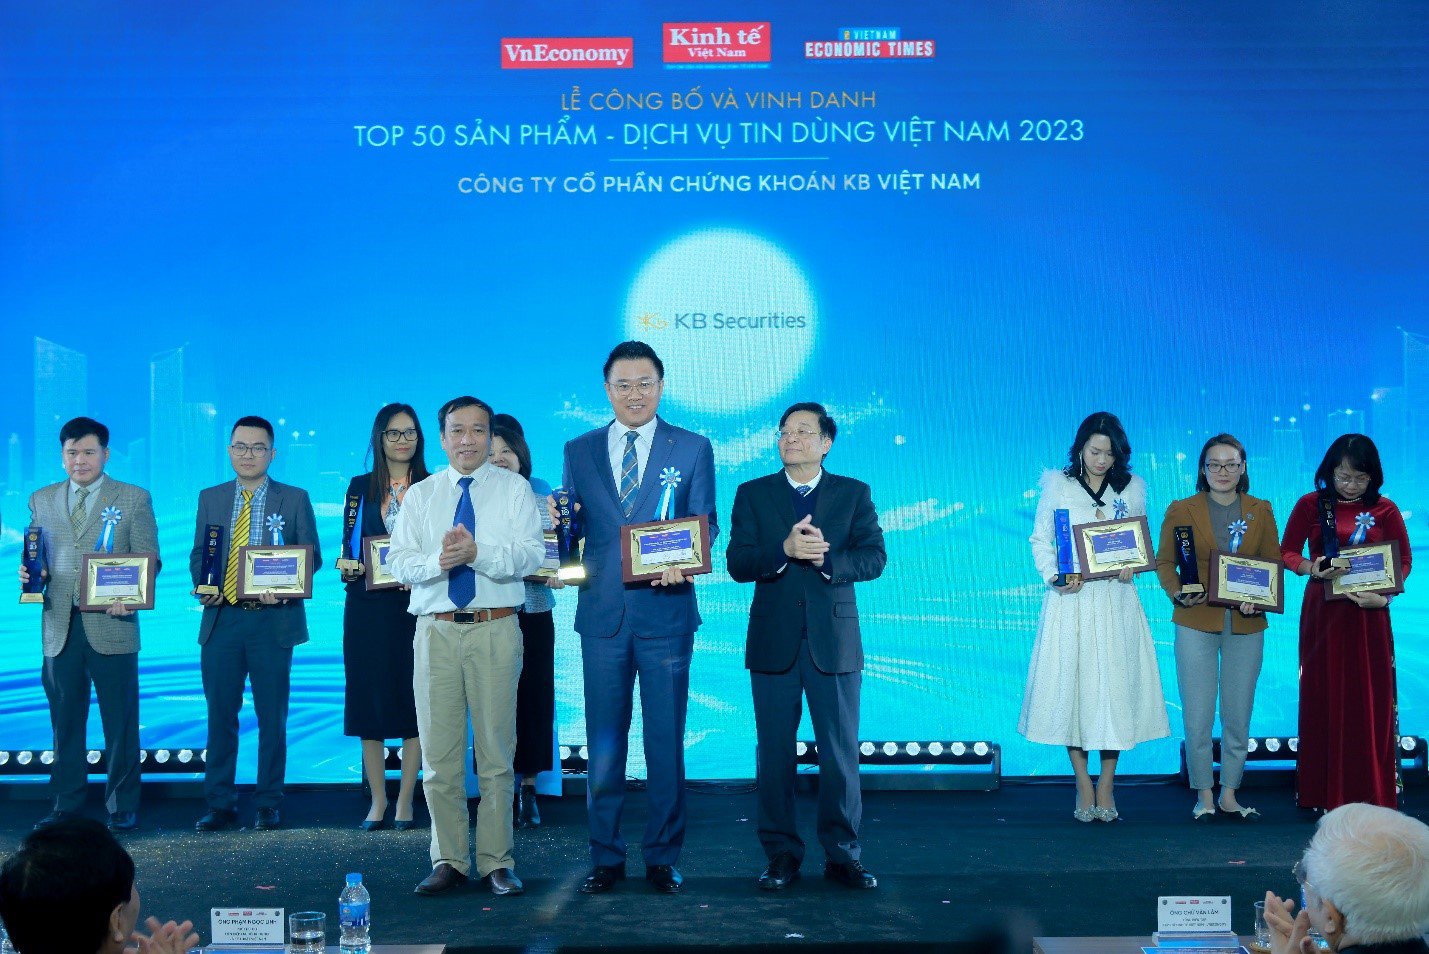 Chứng khoán KB Việt Nam liên tiếp được vinh danh tại các giải thưởng lớn - 4